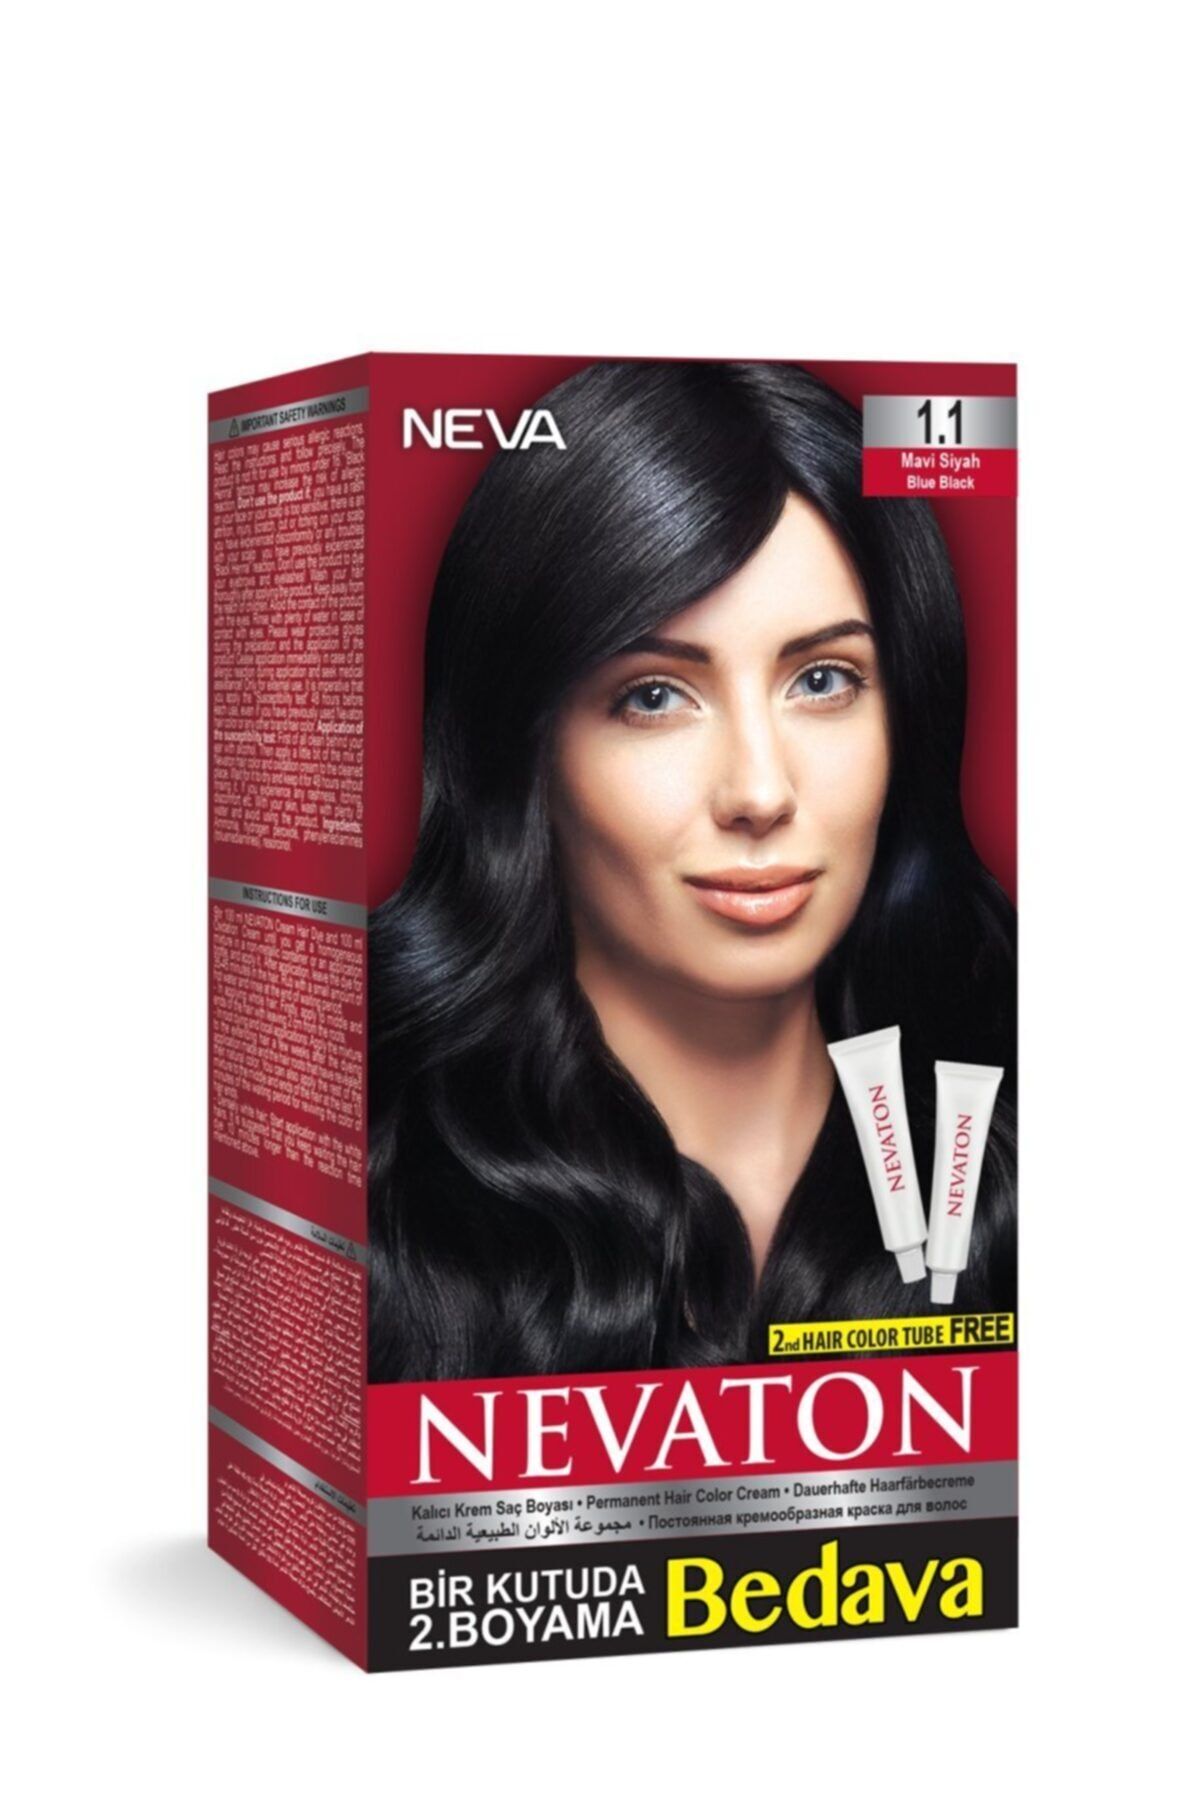 Nevaton Nevaton Kalıcı Krem Saç Boyası 1.1 Mavi Siyah